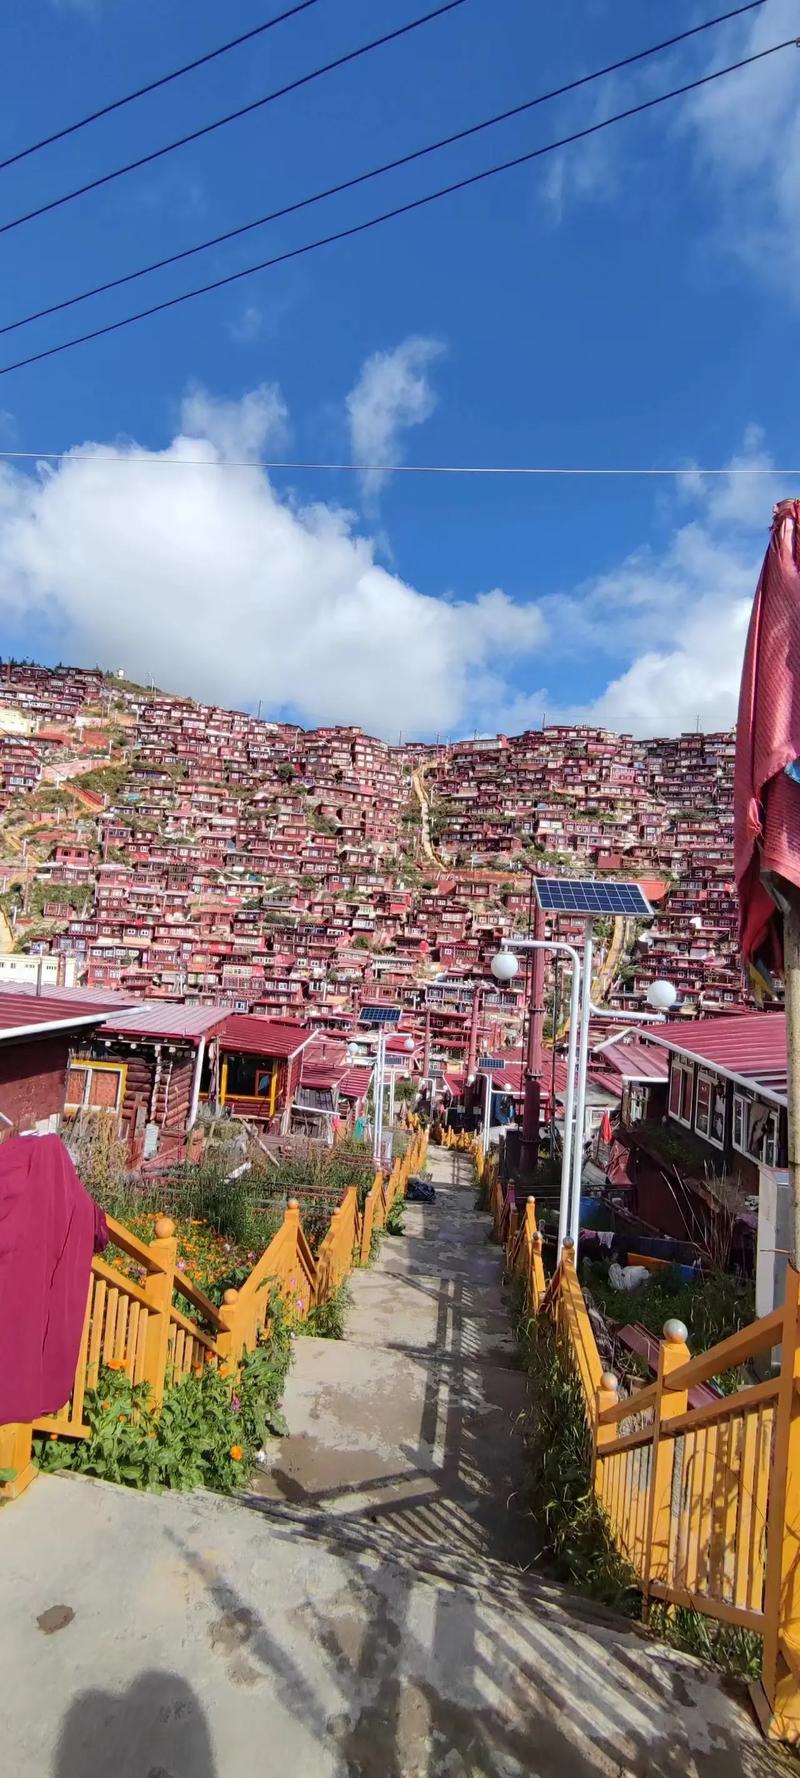 佛学院坐落在四川省甘孜藏族自治州色达境内 - 抖音